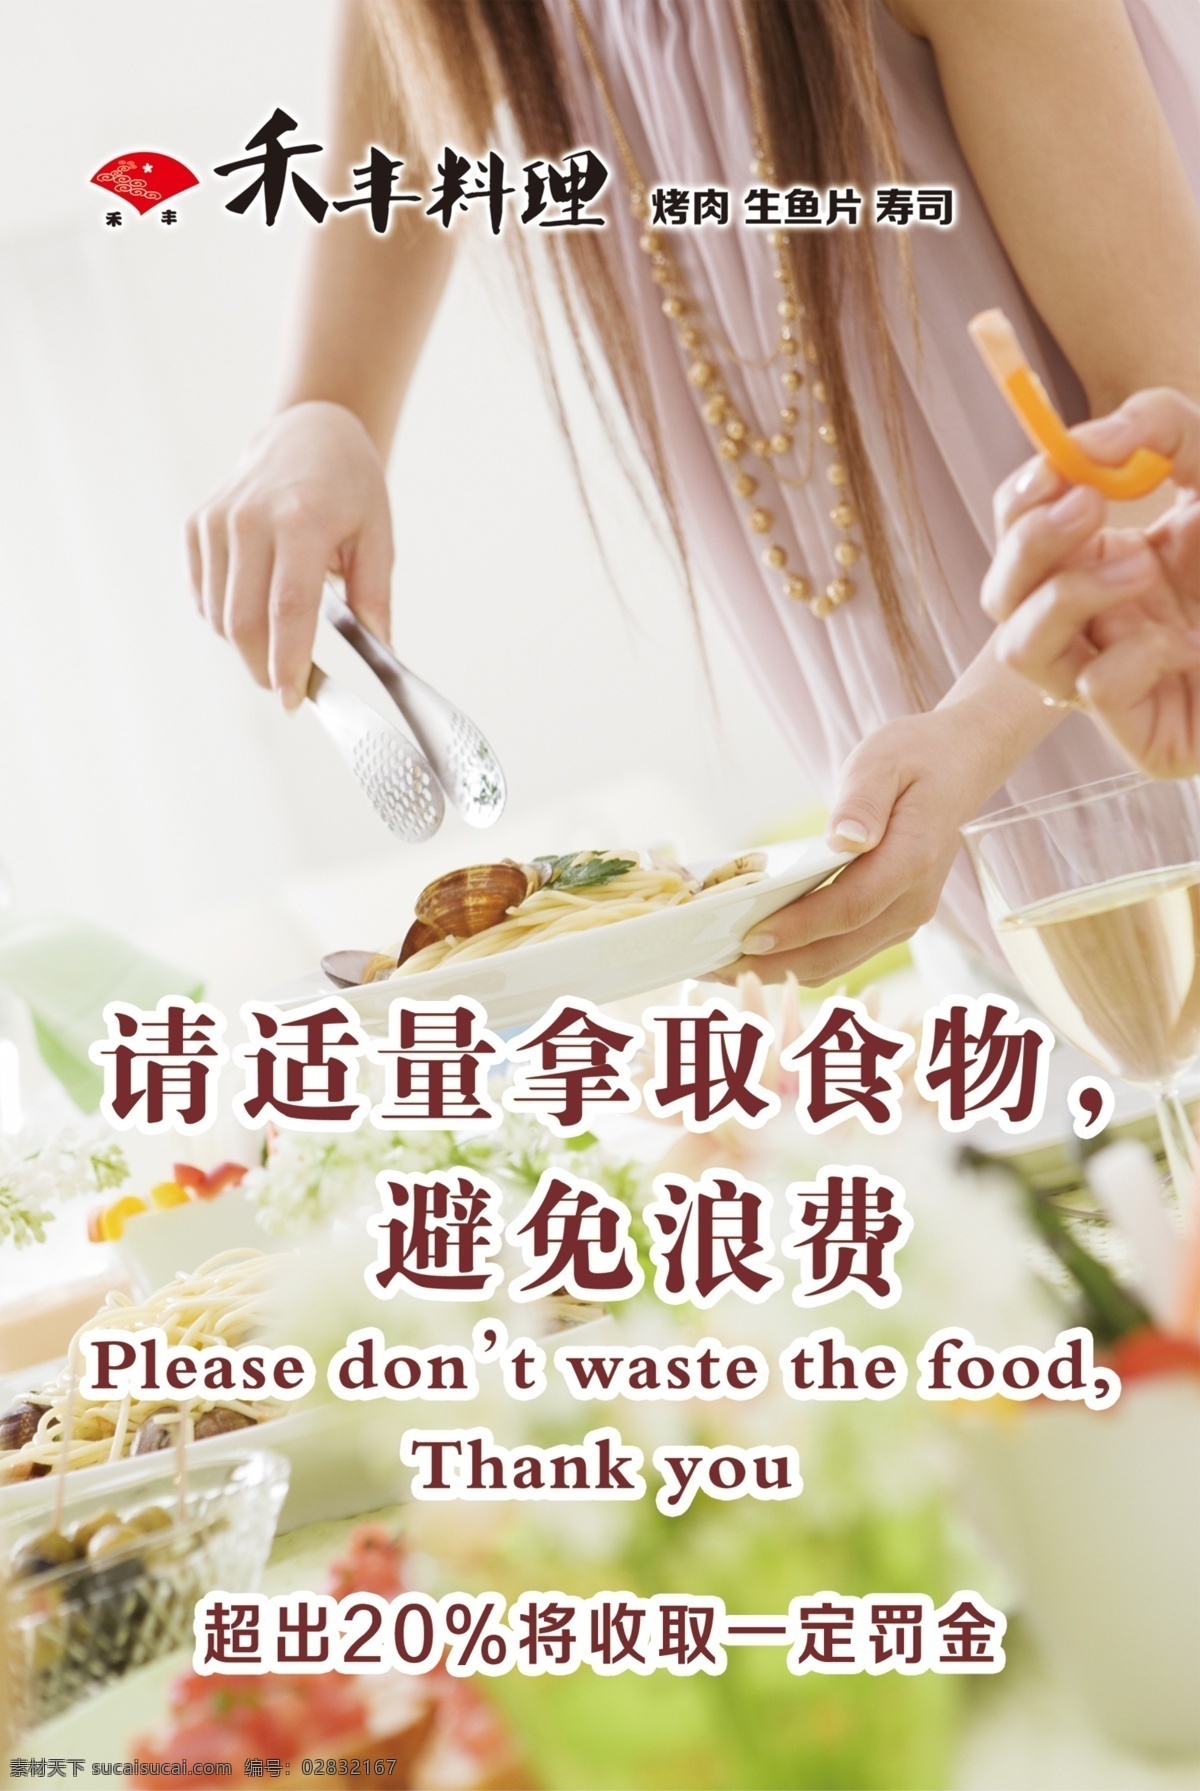 避免浪费标语 饭店 餐厅 避免浪费 自助餐 自助 展板模板